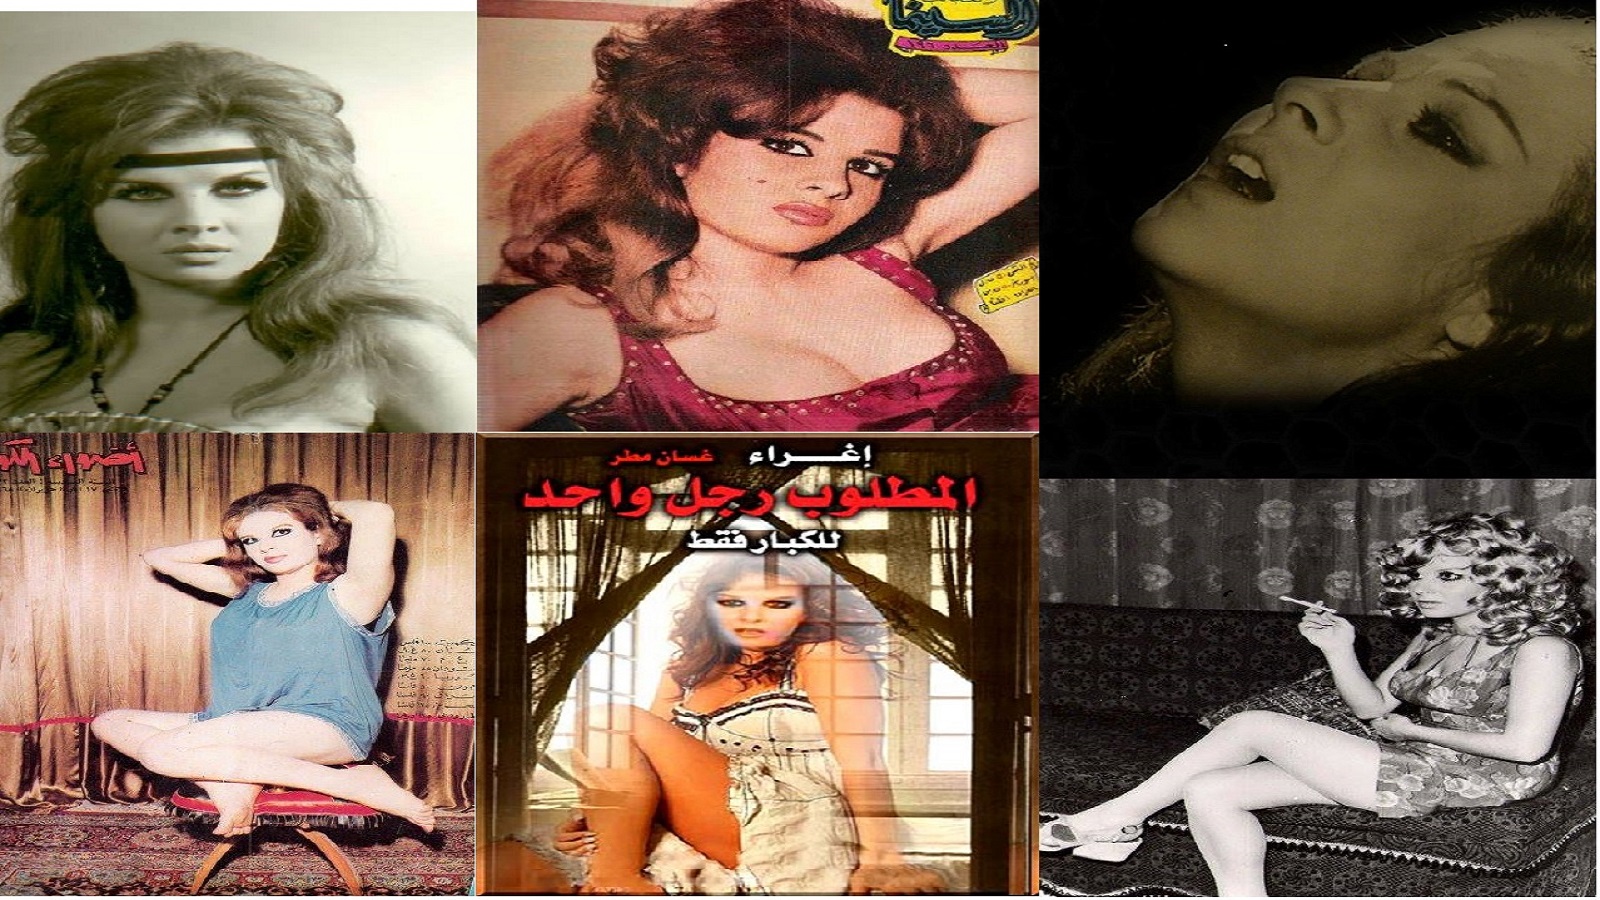 الإغراء العربي في صوره.. الممثلة إغراء "عارية بلا خطيئة"